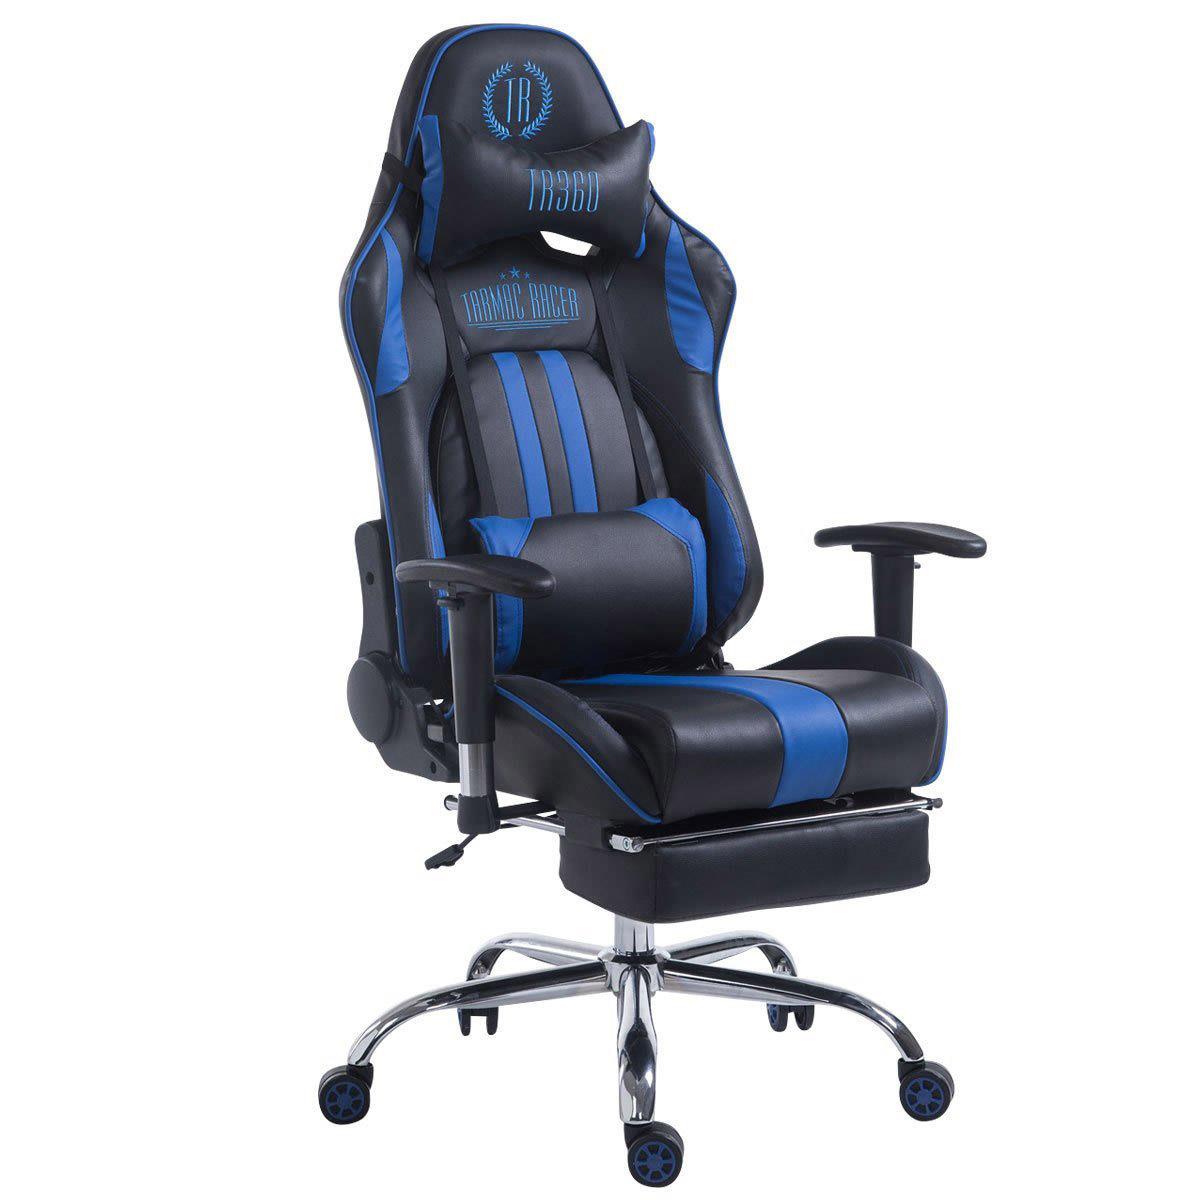 Cadeira Gaming LOGAN com Apoio para os pés, Encosto Reclinável, Almofadas Incluidas, Base Metálica, Em Preto/Azul